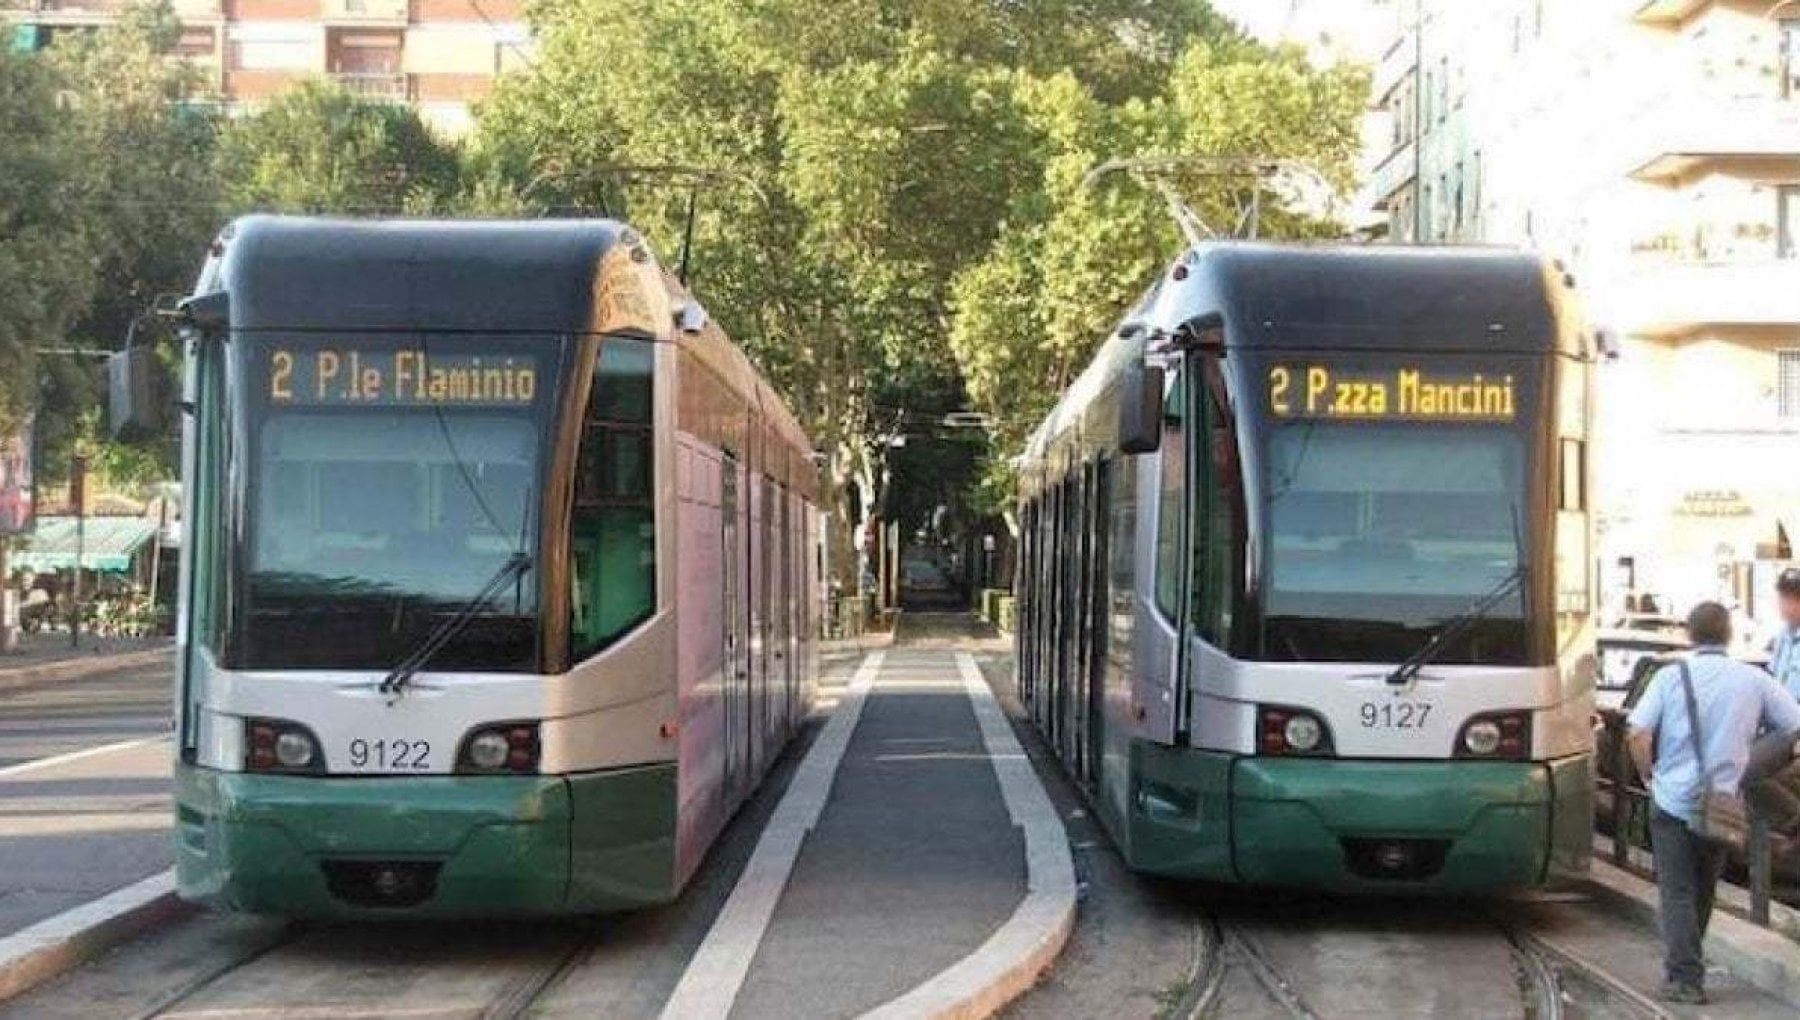 2 convogli del Tram 2 a Roma